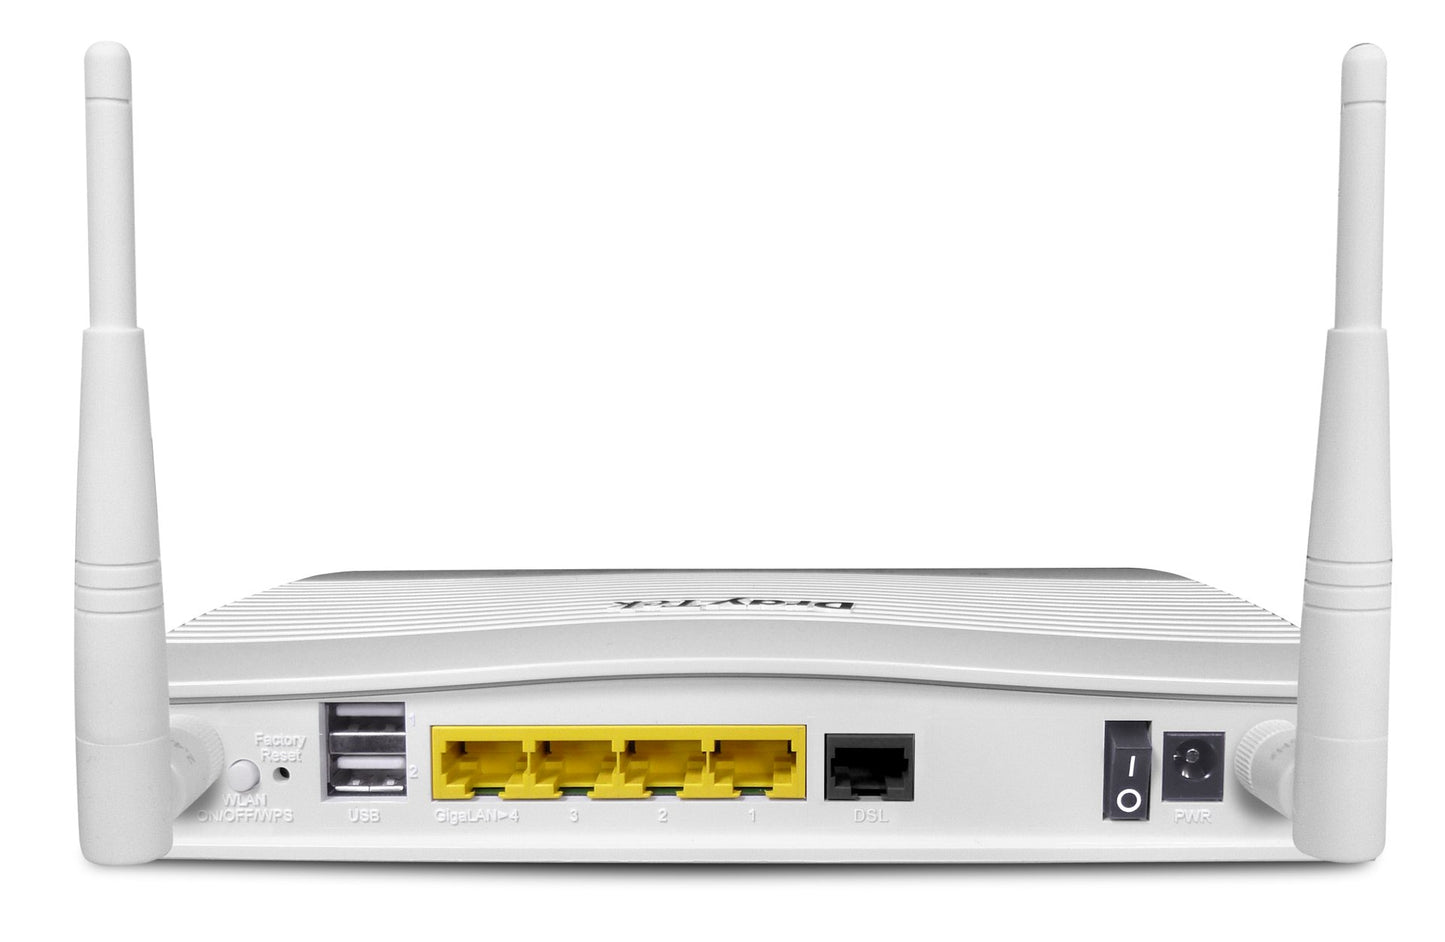 DrayTek Vigor 2763AC VDSL & Ethernet SoHo Wireless Router (V2763AC-K)